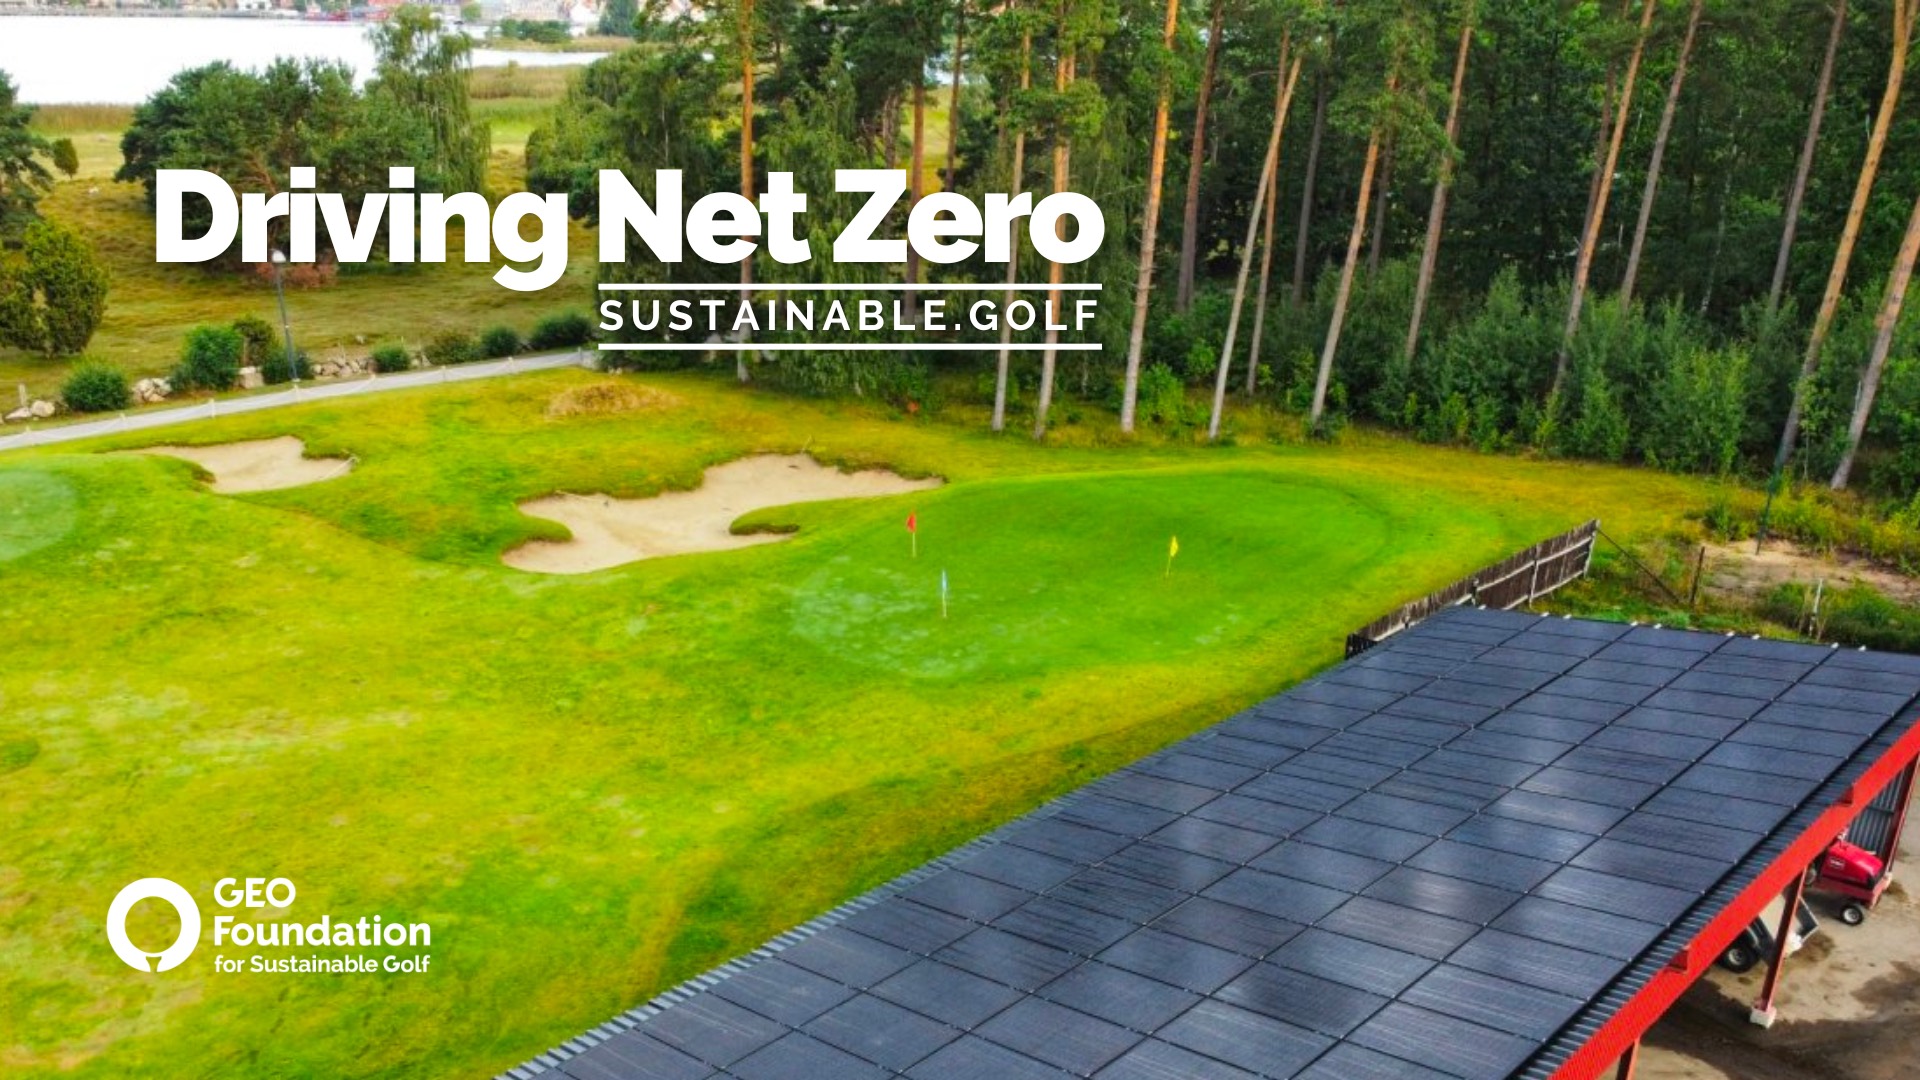 Golf Business News - Golf's 'Drive to Net Zero' under the spotlight